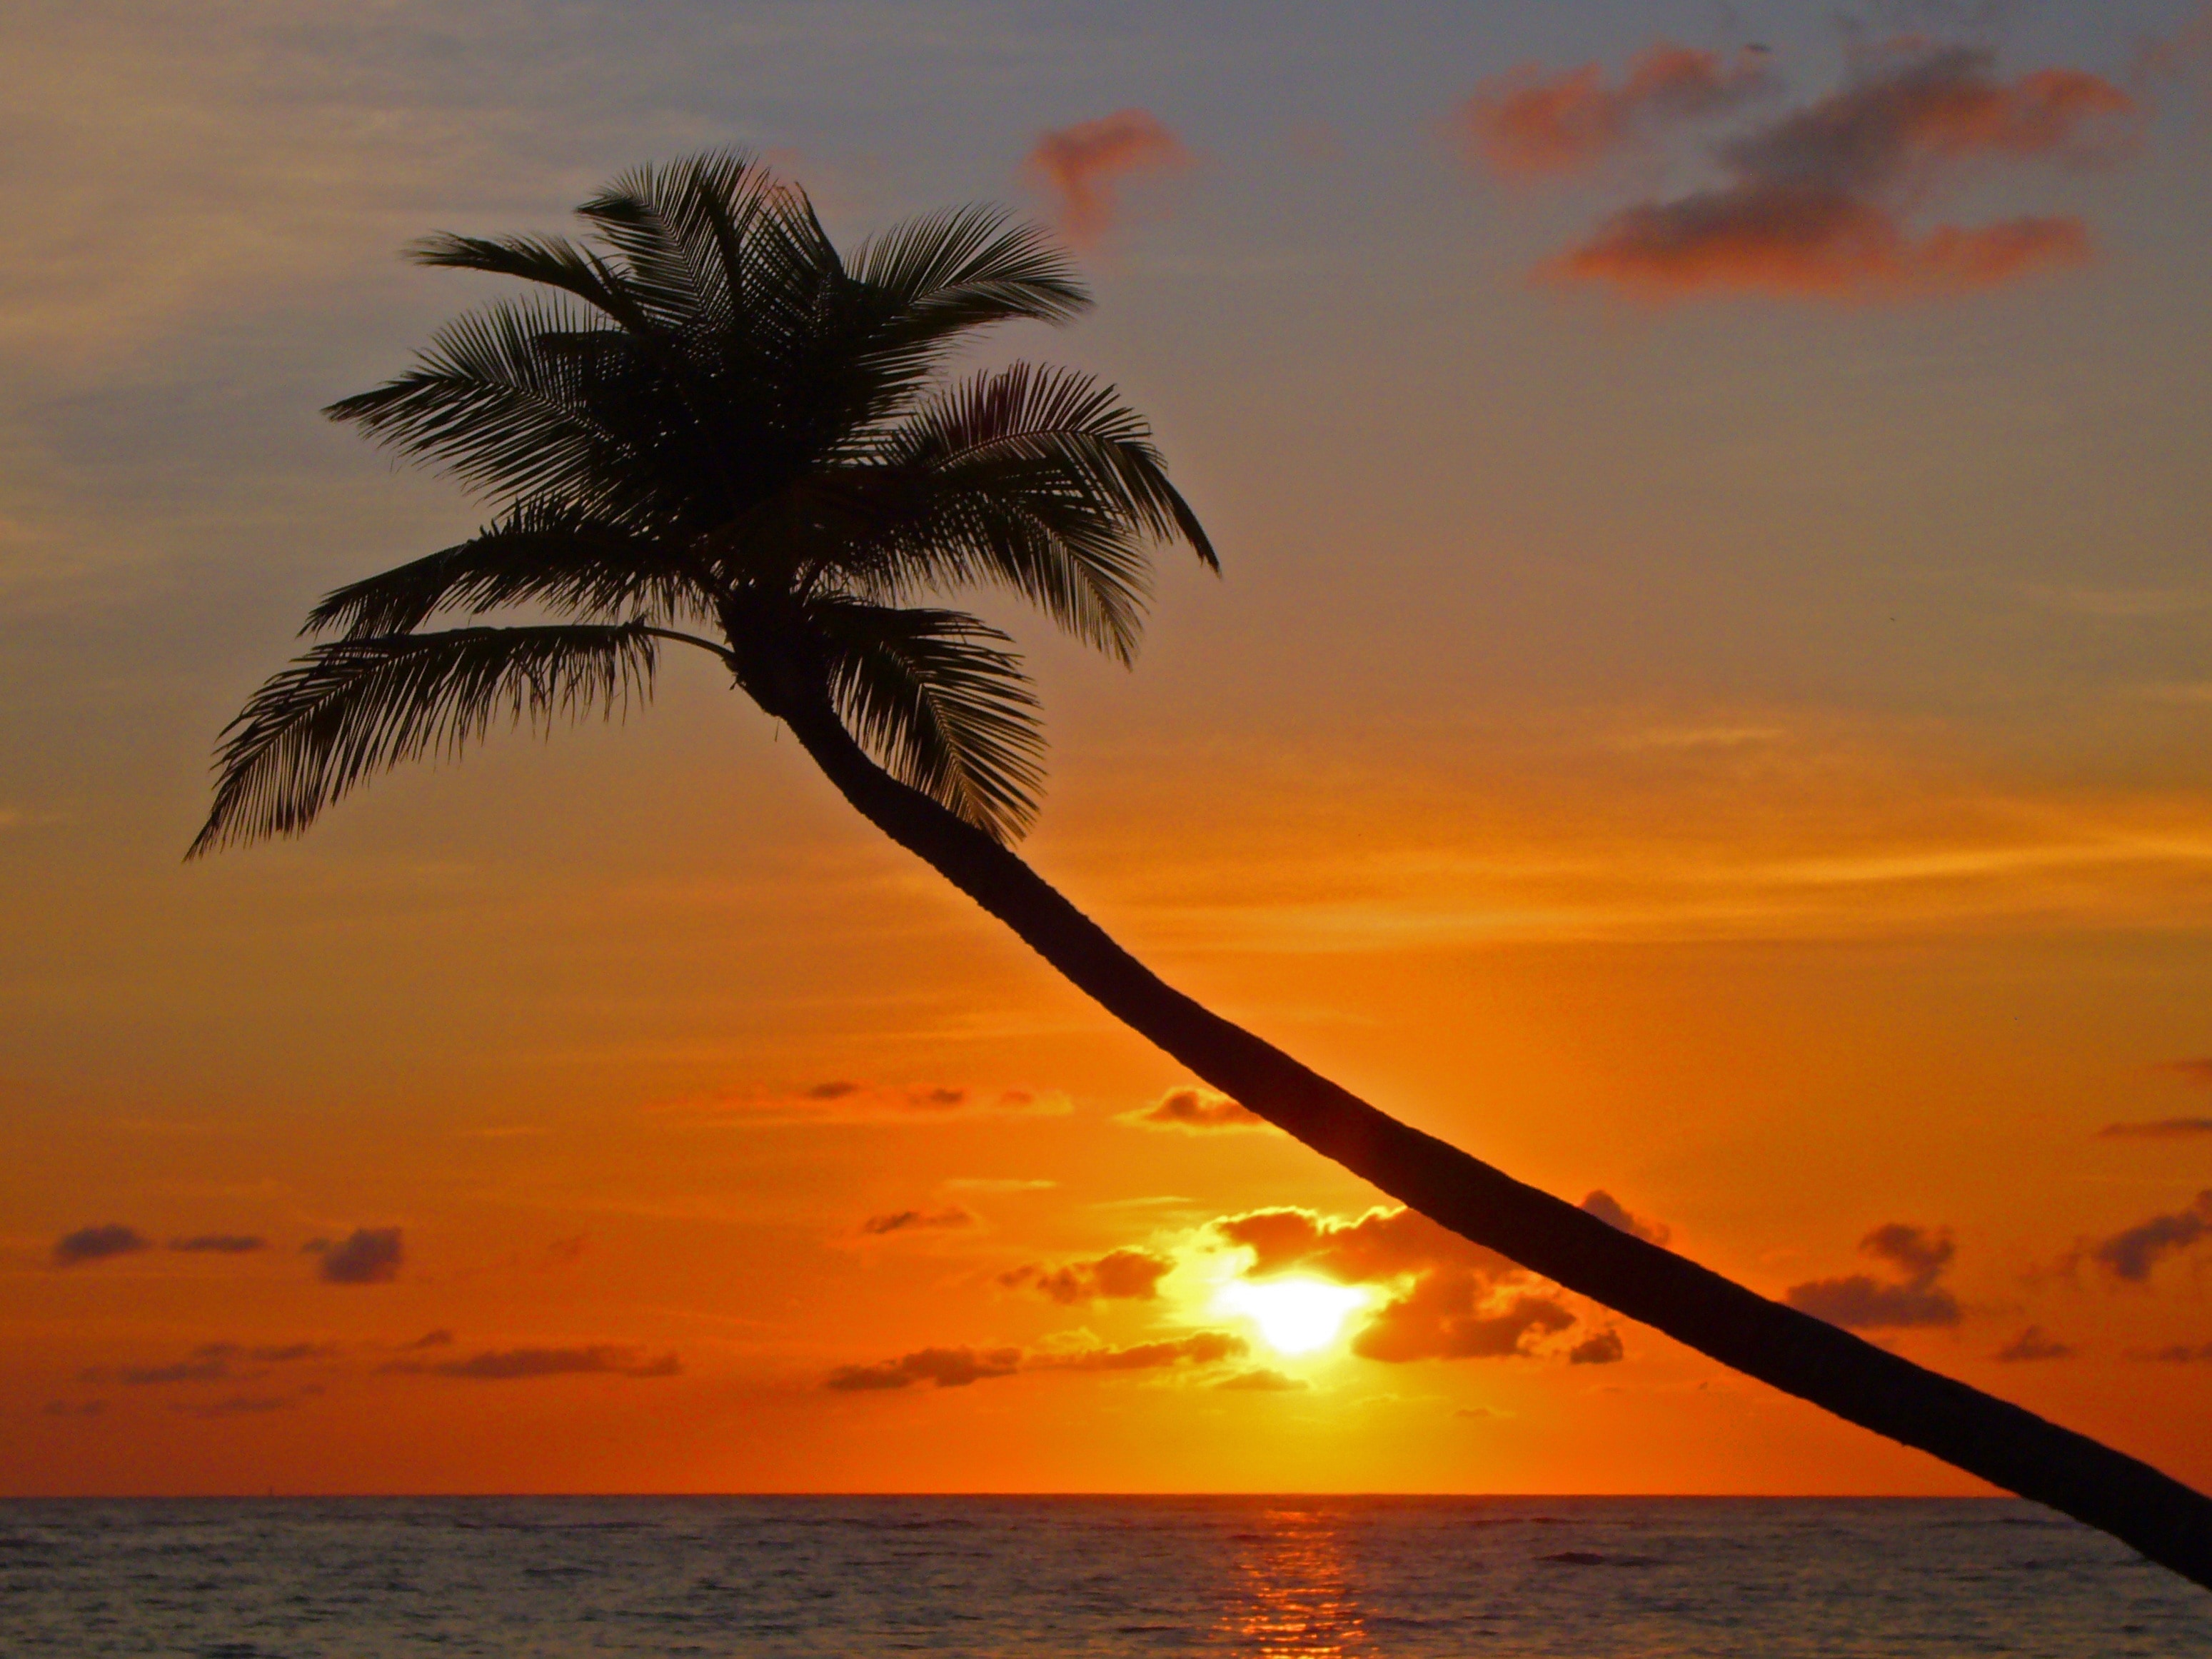 1920x1080 wallpaper | Palm, Sunset, Beach, Evening Sky, sunset, sea ...